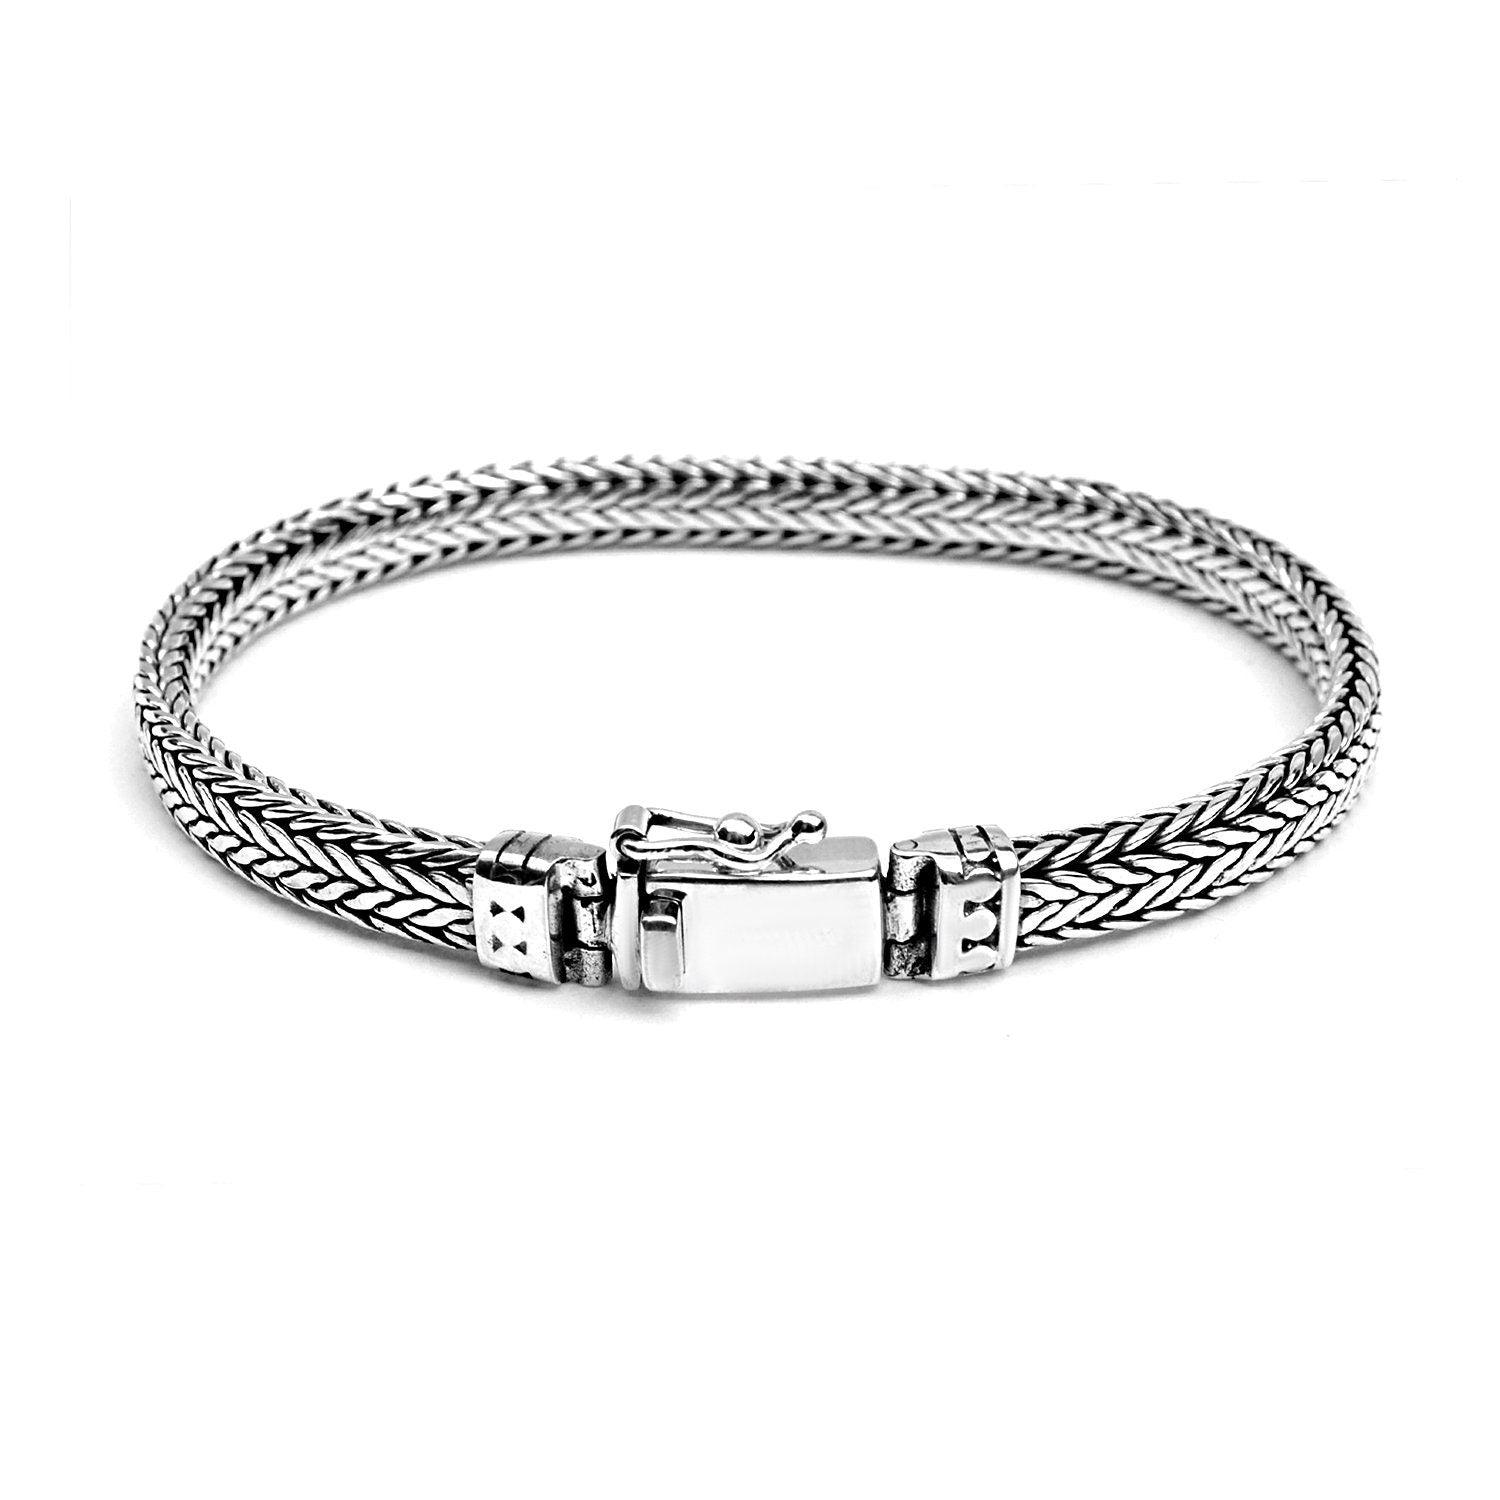 UNISEX HANDMADE Bali SNAKE Chain Bracelet Solid Sterling Silver Rectangular 6 mm - Inspiring Jewellery